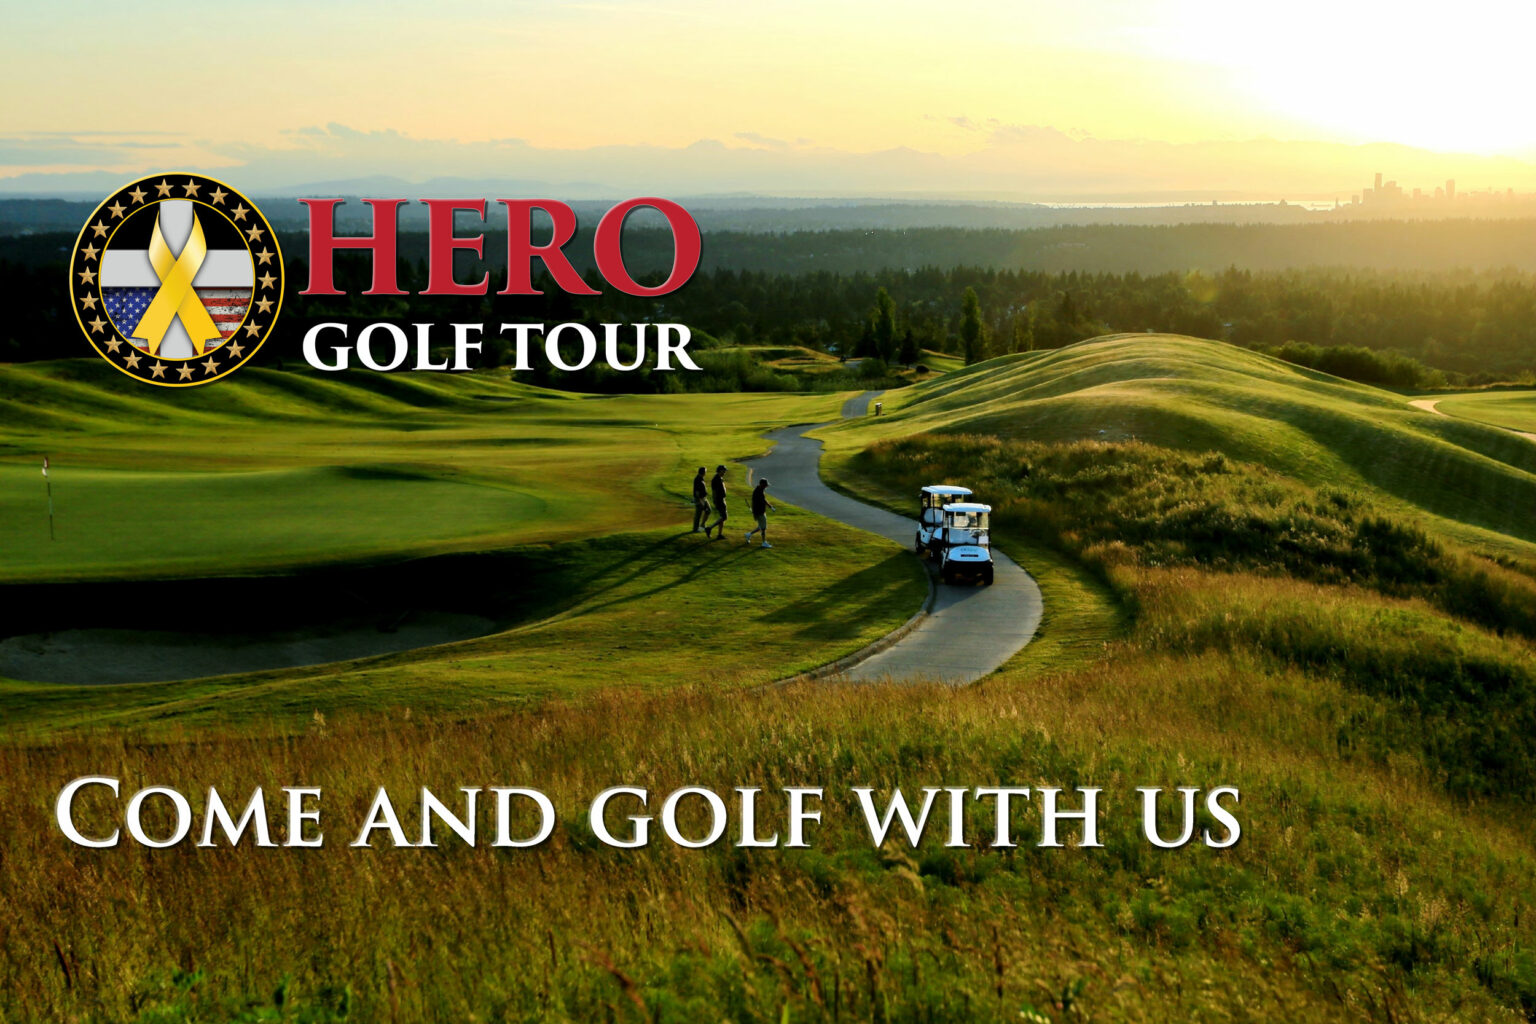 hero golf tour jobs